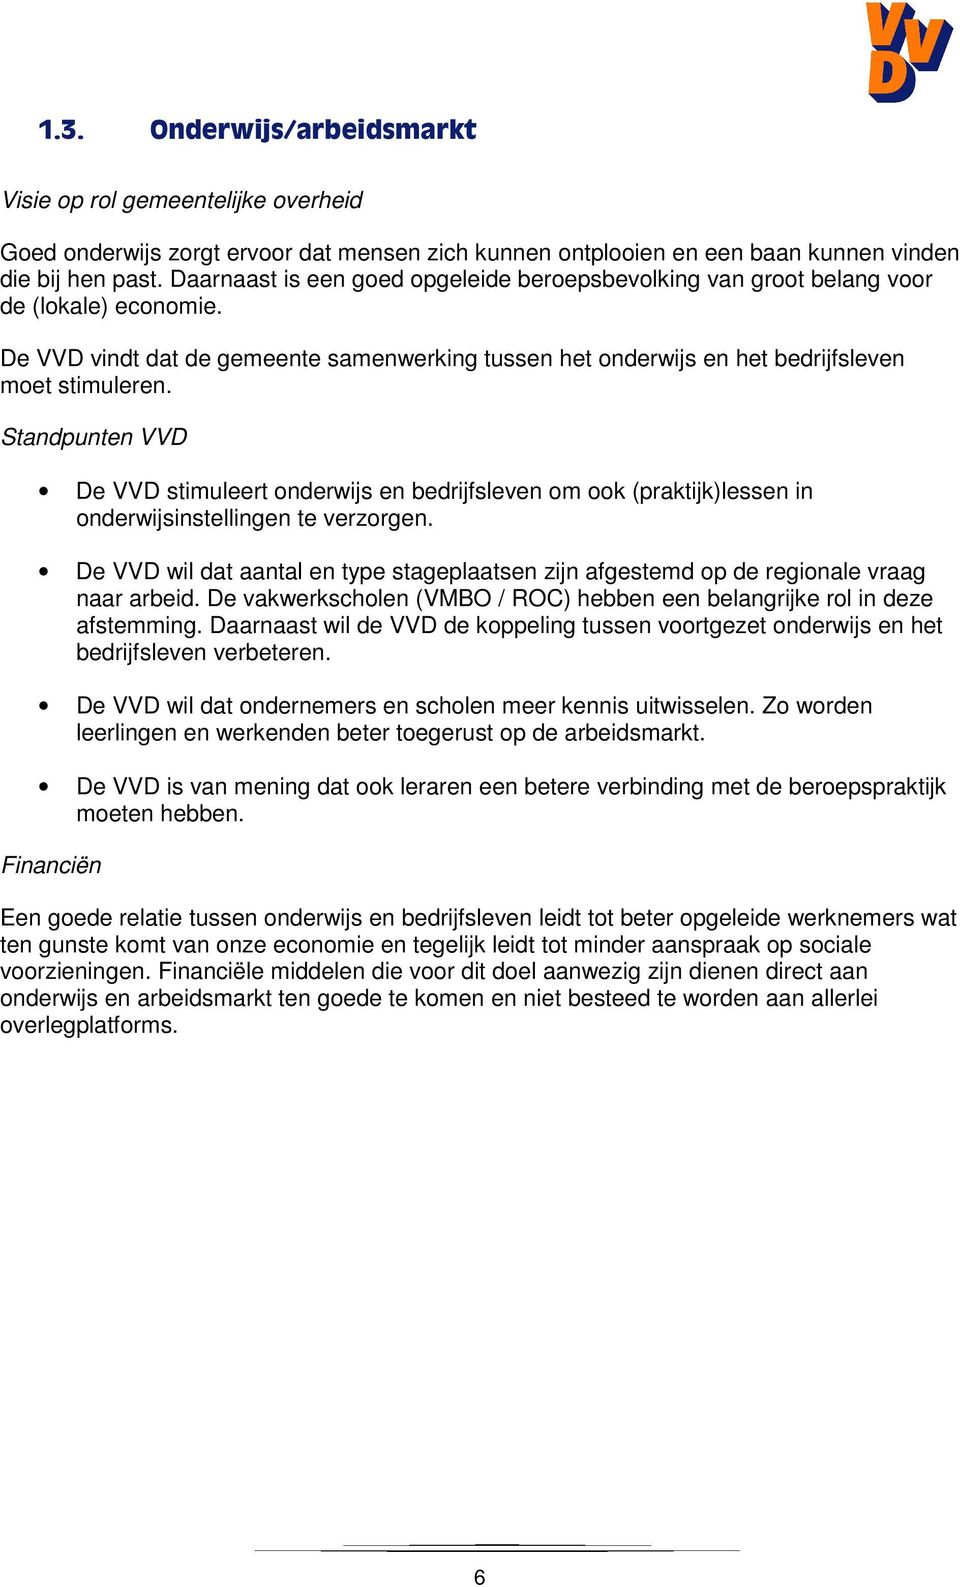 Standpunten VVD De VVD stimuleert onderwijs en bedrijfsleven om ook (praktijk)lessen in onderwijsinstellingen te verzorgen.